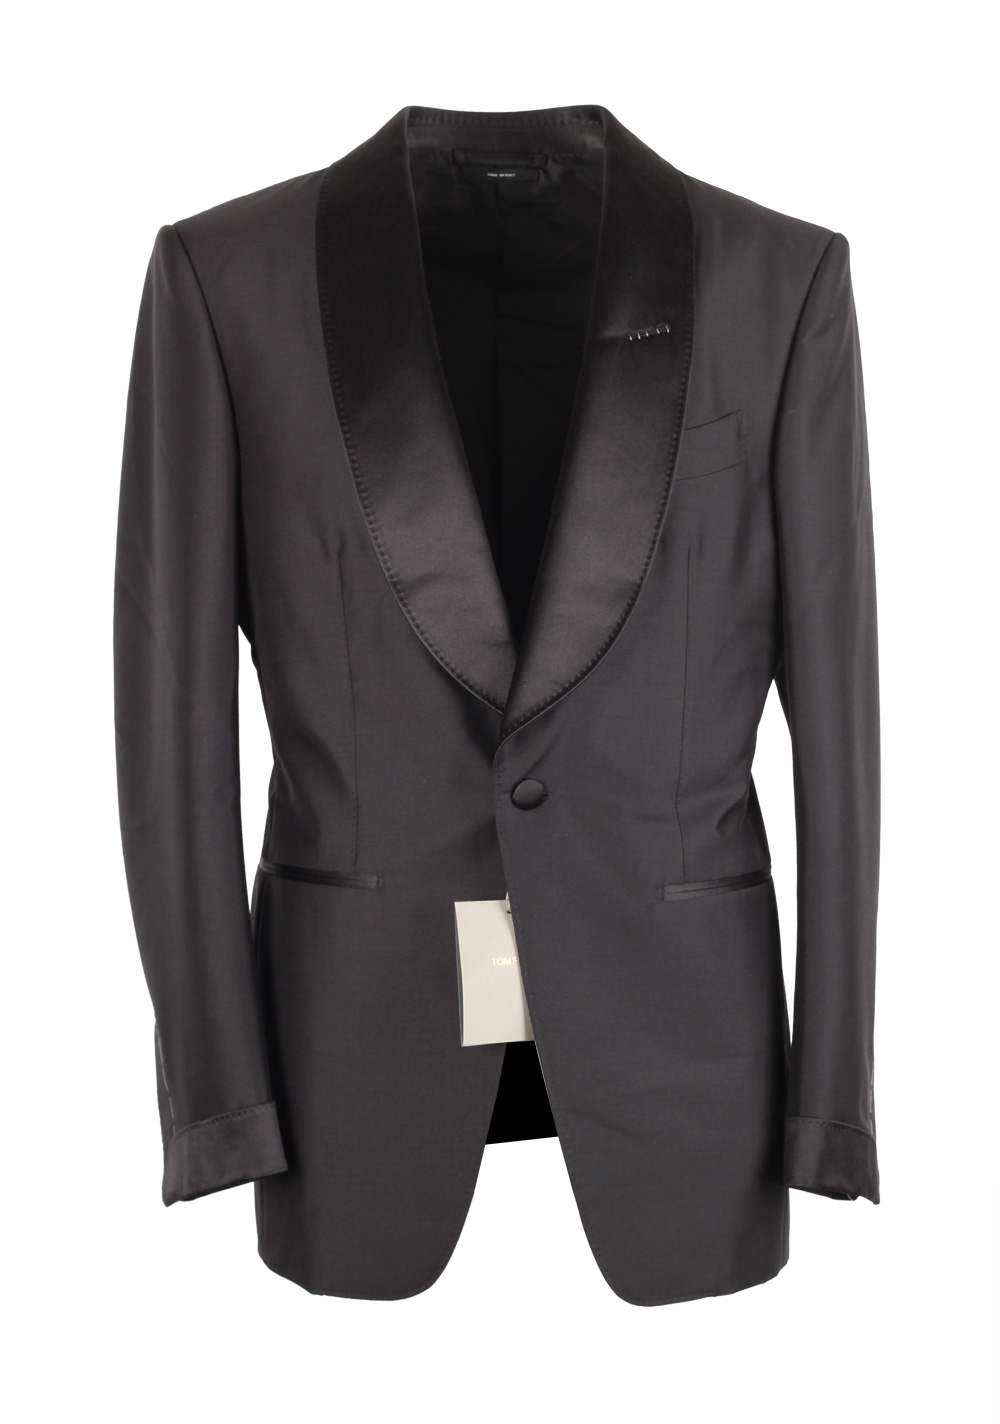 TOM FORD Atticus Black Tuxedo Smoking Suit Size 46C / 36S U.S ...